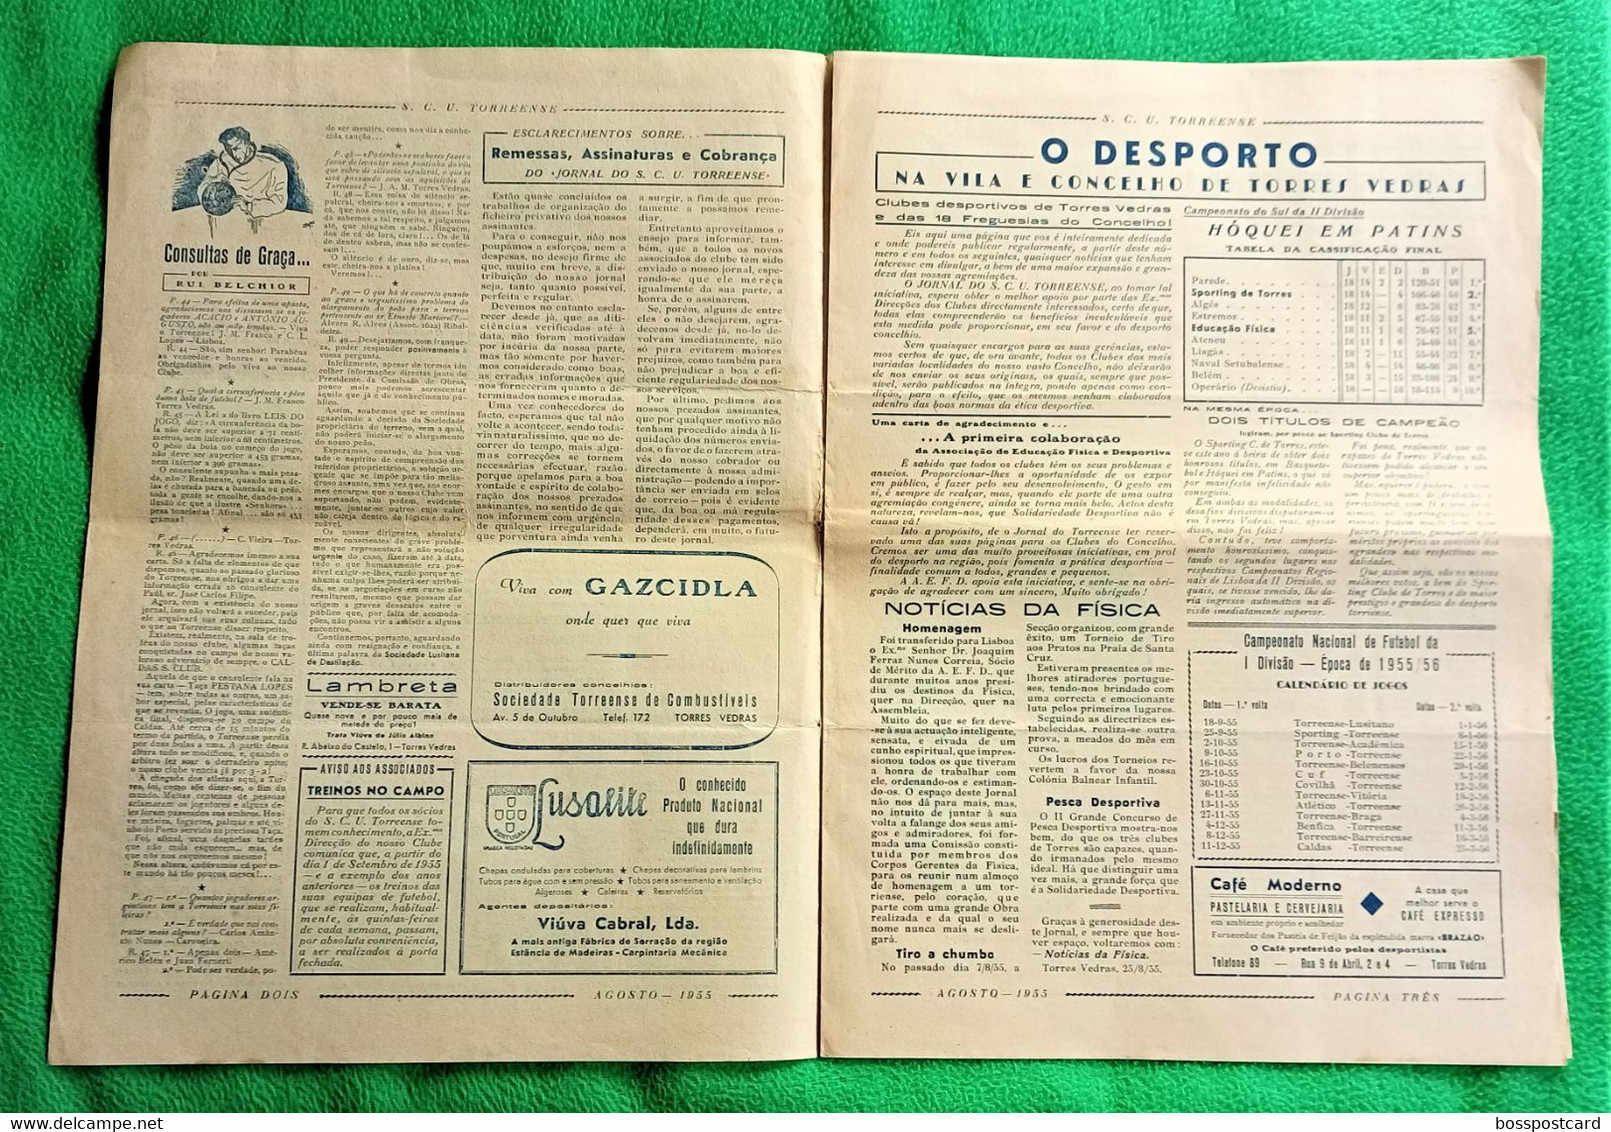 Torres Vedras - Jornal Torreense Nº 8 De Agosto De 1955 - Sport Club União, 1ª Divisão - Futebol - Estádio - General Issues